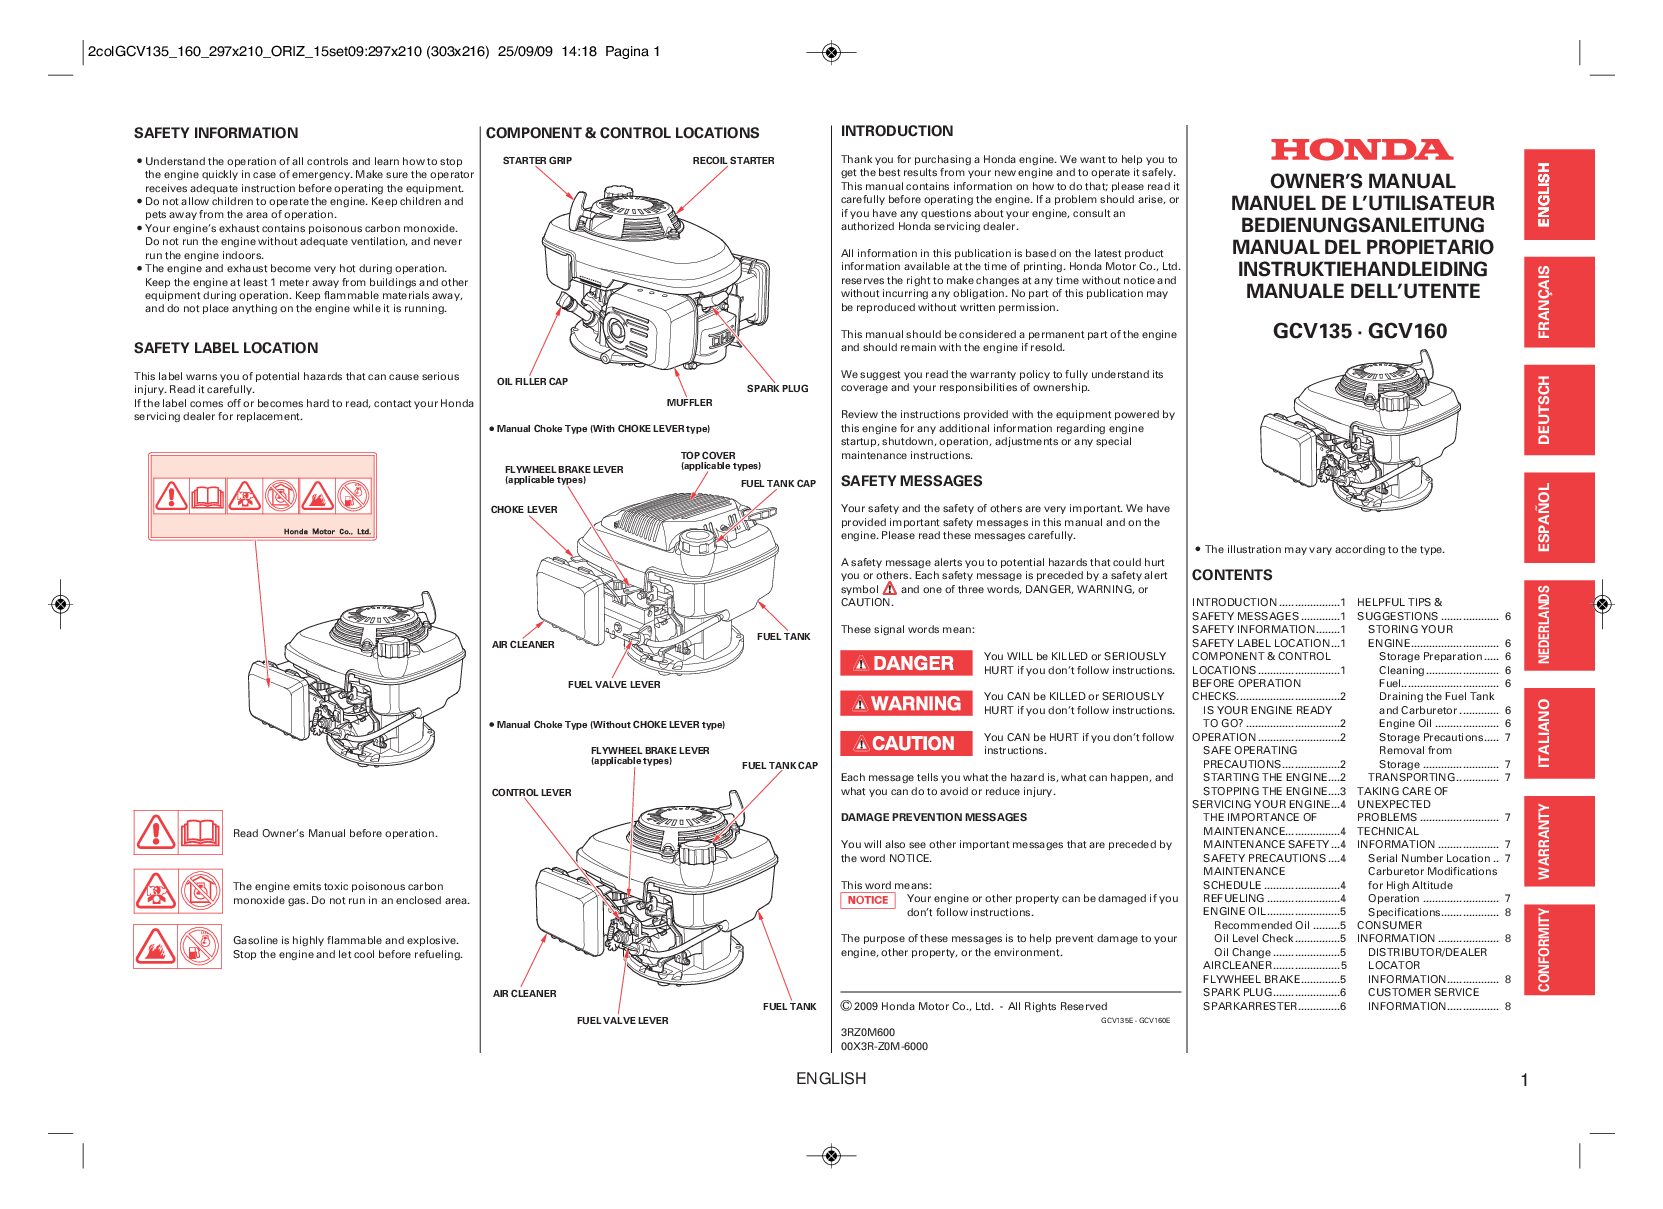 Honda Engines GCV135 Bedienungsanleitung